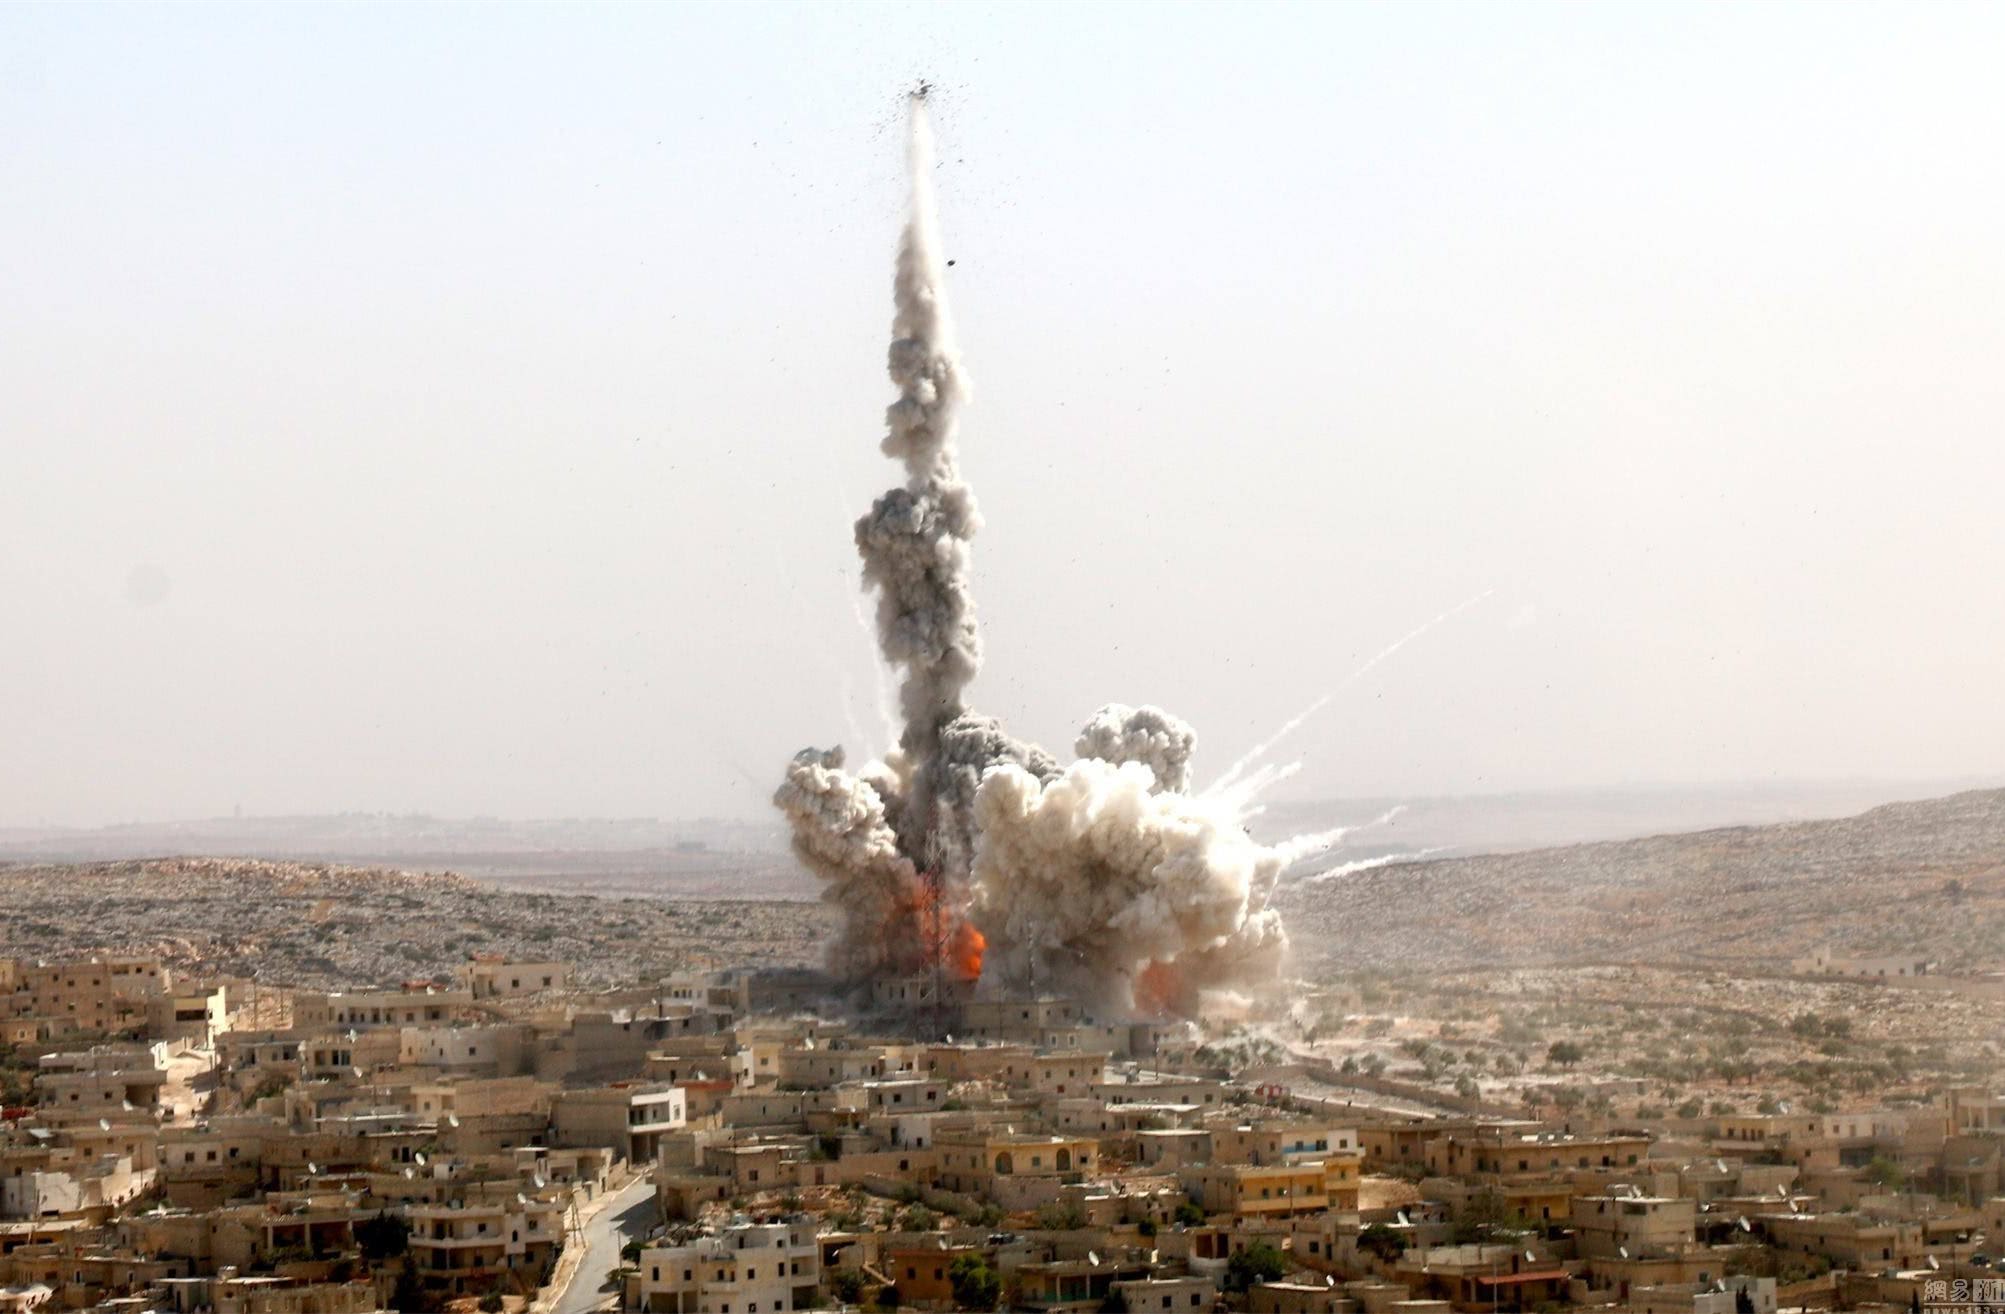 《紐約時報》指美軍空襲誤炸平民數字比當局公布為高 | Now 新聞